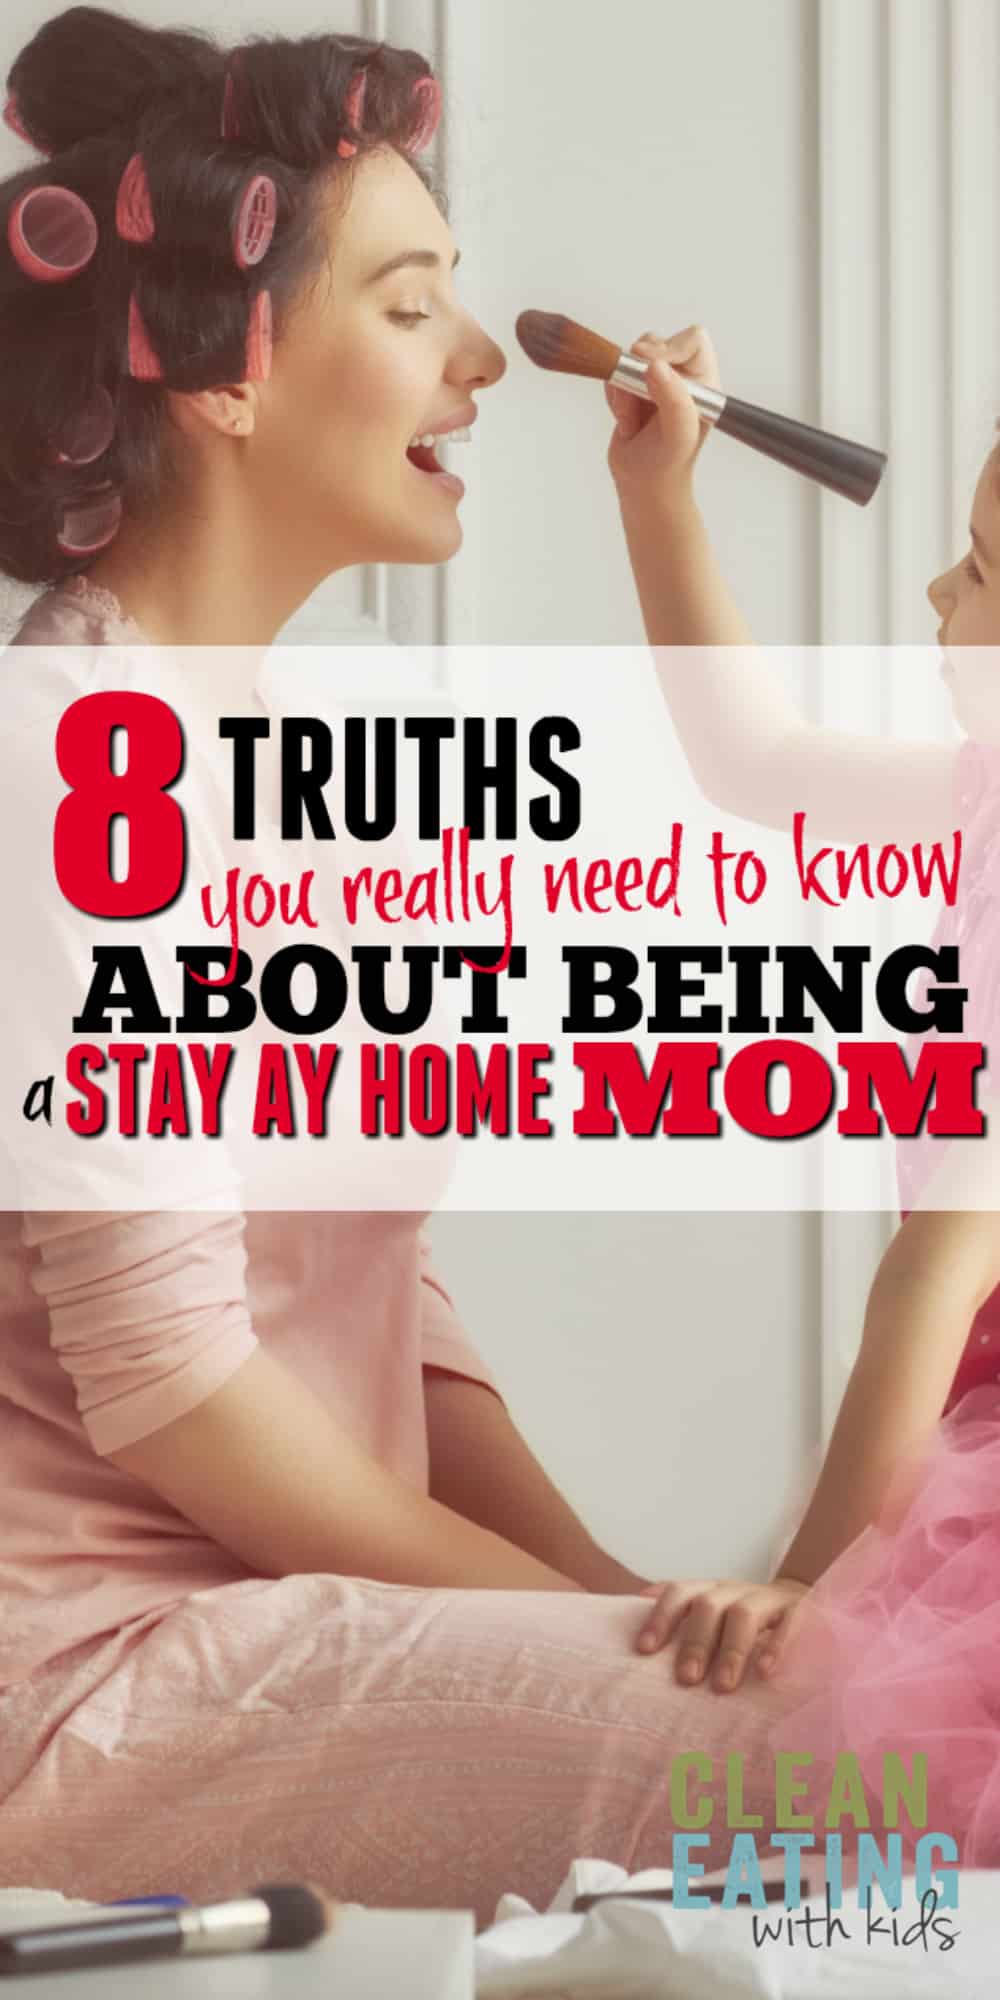  pravda o pobytu doma máma: 8 věcí, které potřebujete vědět.